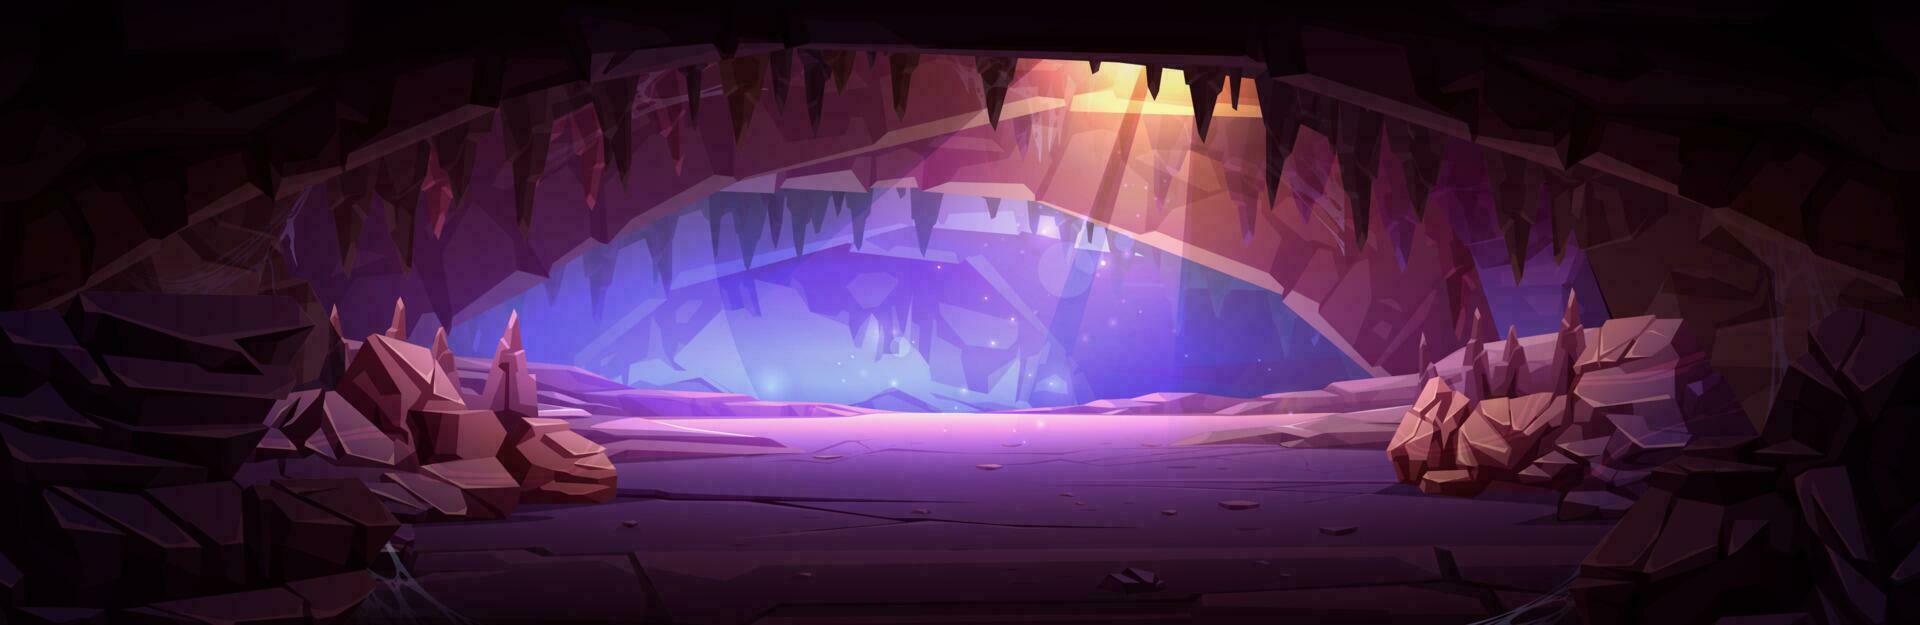 tekenfilm grot interieur met zonlicht van plafond vector